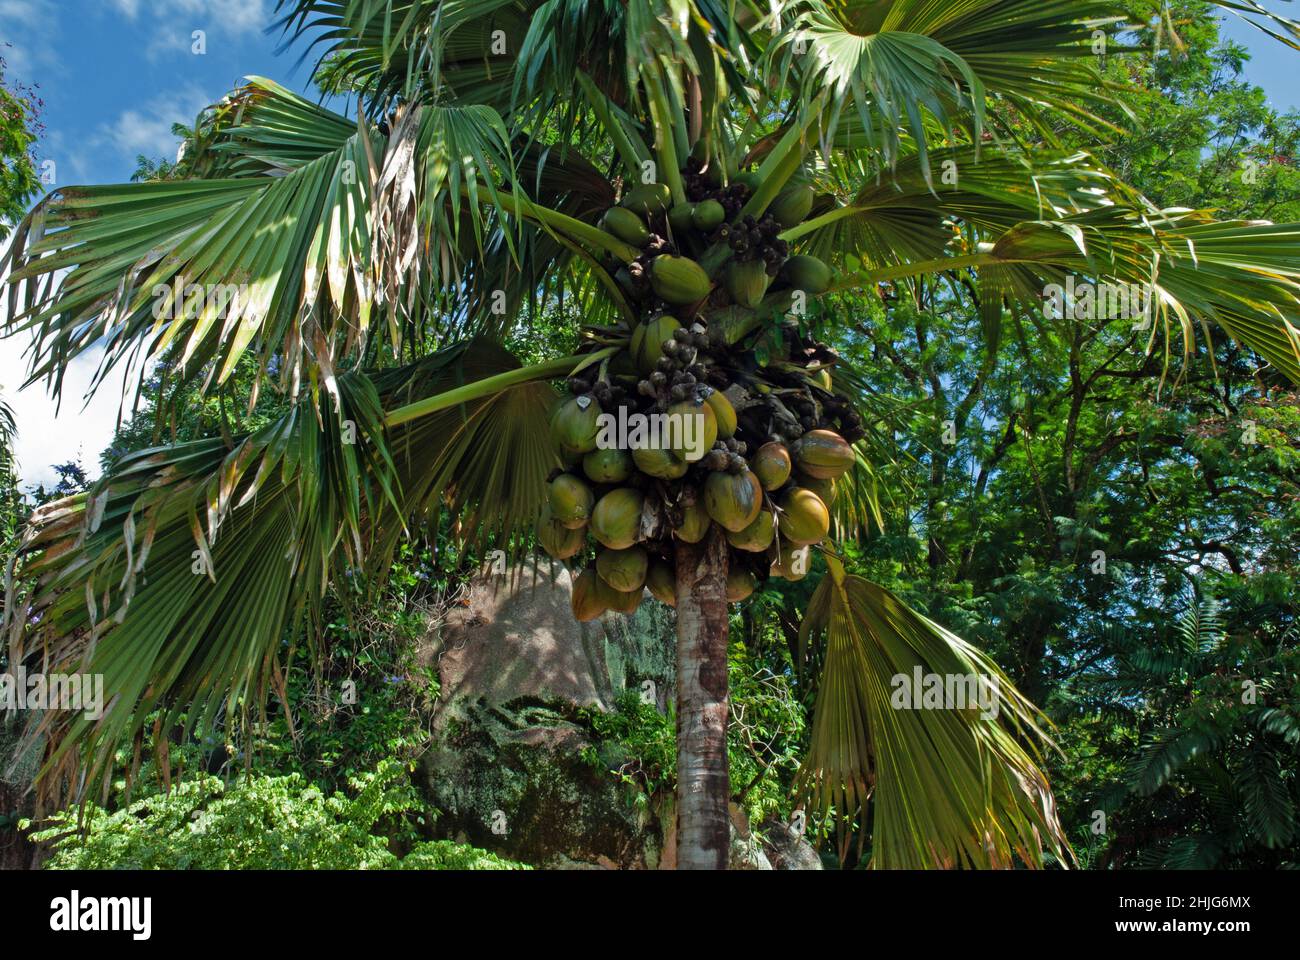 Lodoicea maldivica (Coco de mer) ist eine Palmenart, die auf den Inseln Praslin und Curieuse auf den Seychellen endemisch ist. Es kommt im Regenwald vor. Stockfoto